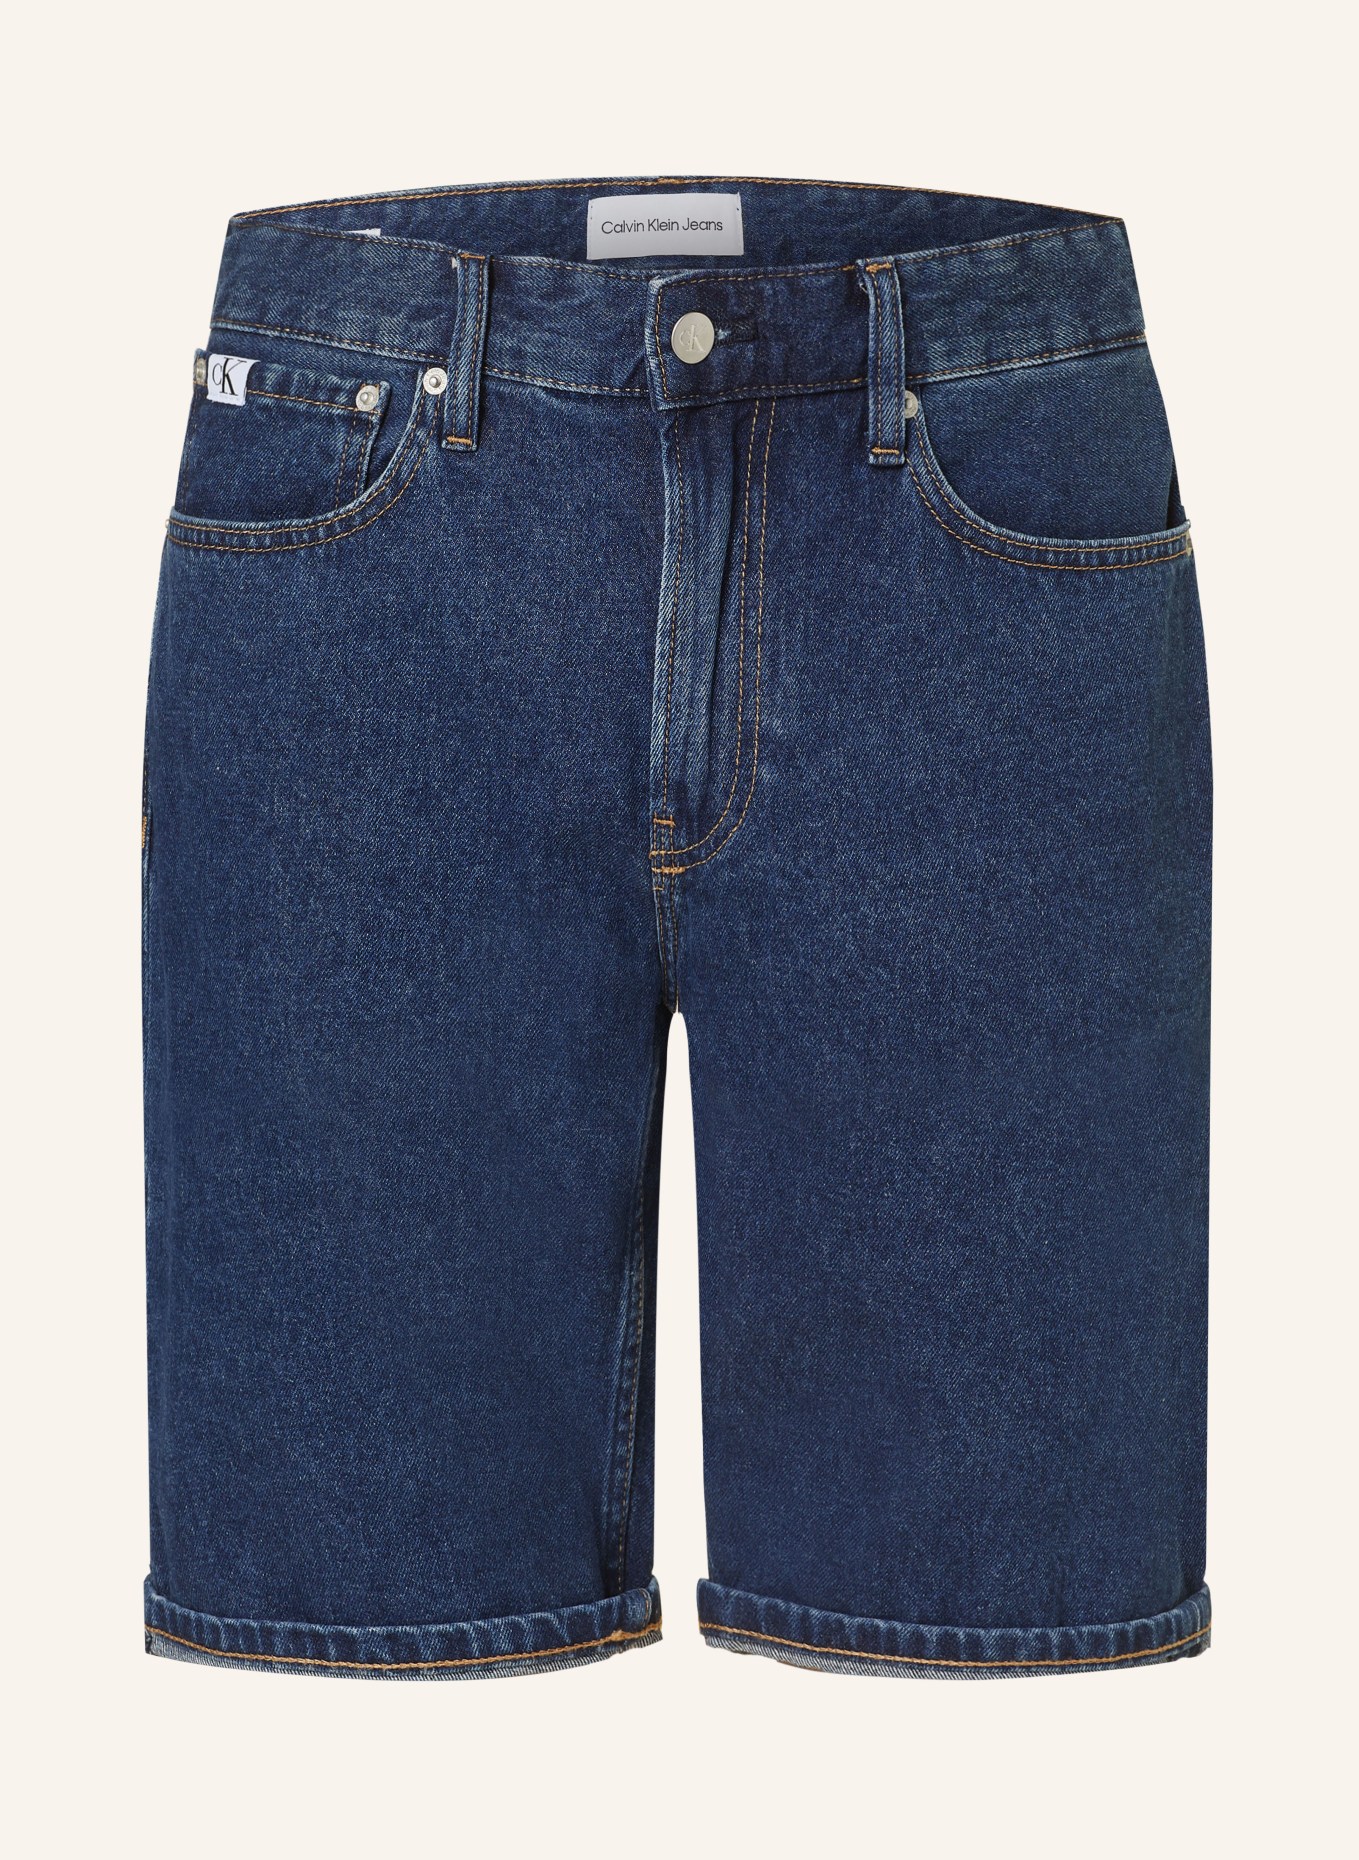 Calvin Klein Jeans Denim shorts regular fit, Color: 1BJ DENIM DARK (Image 1)